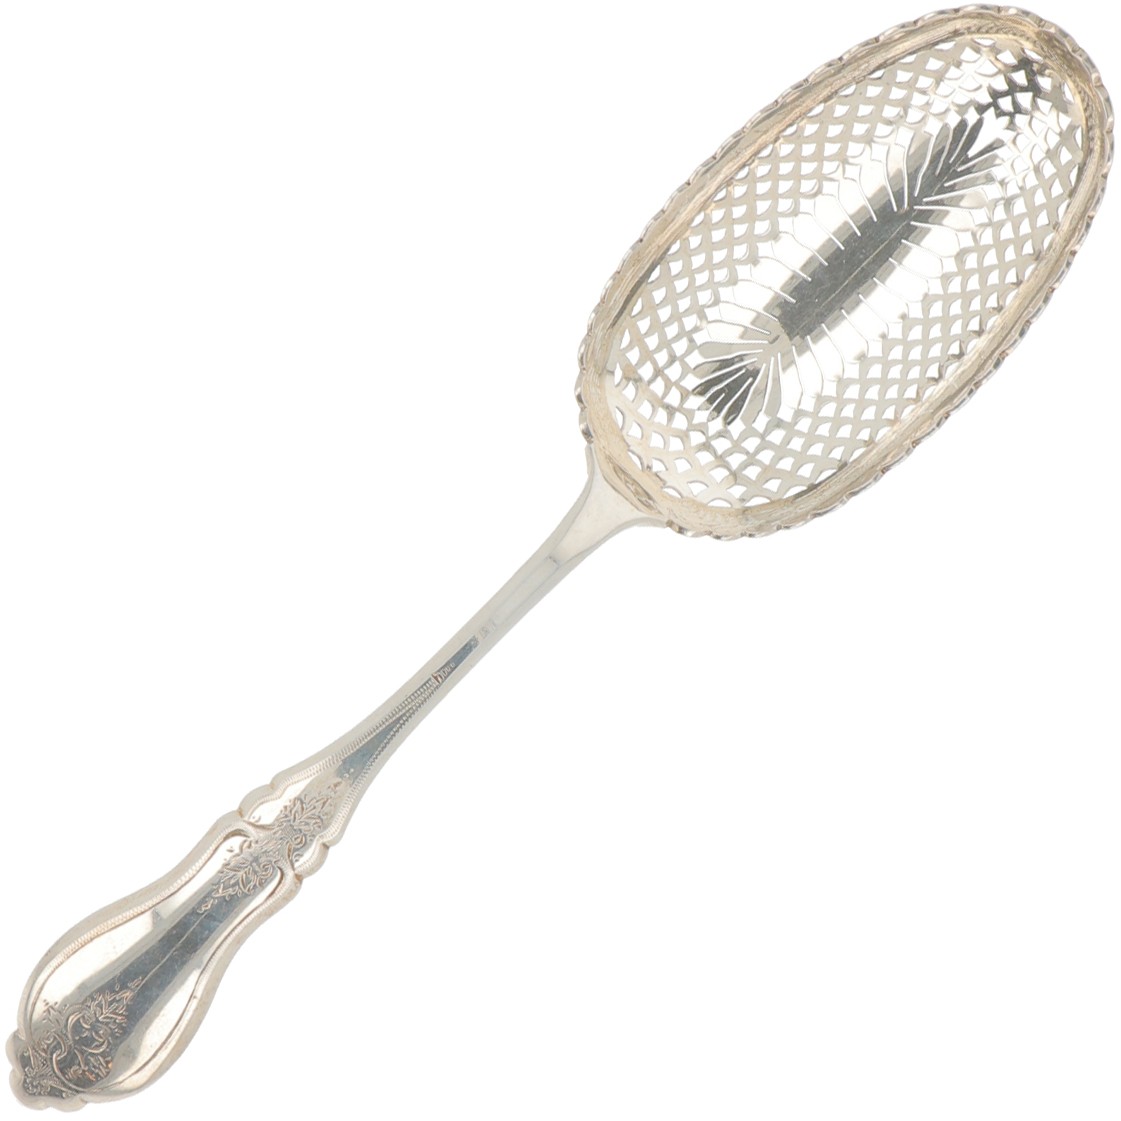 Sprinkle spoon spoon silver.